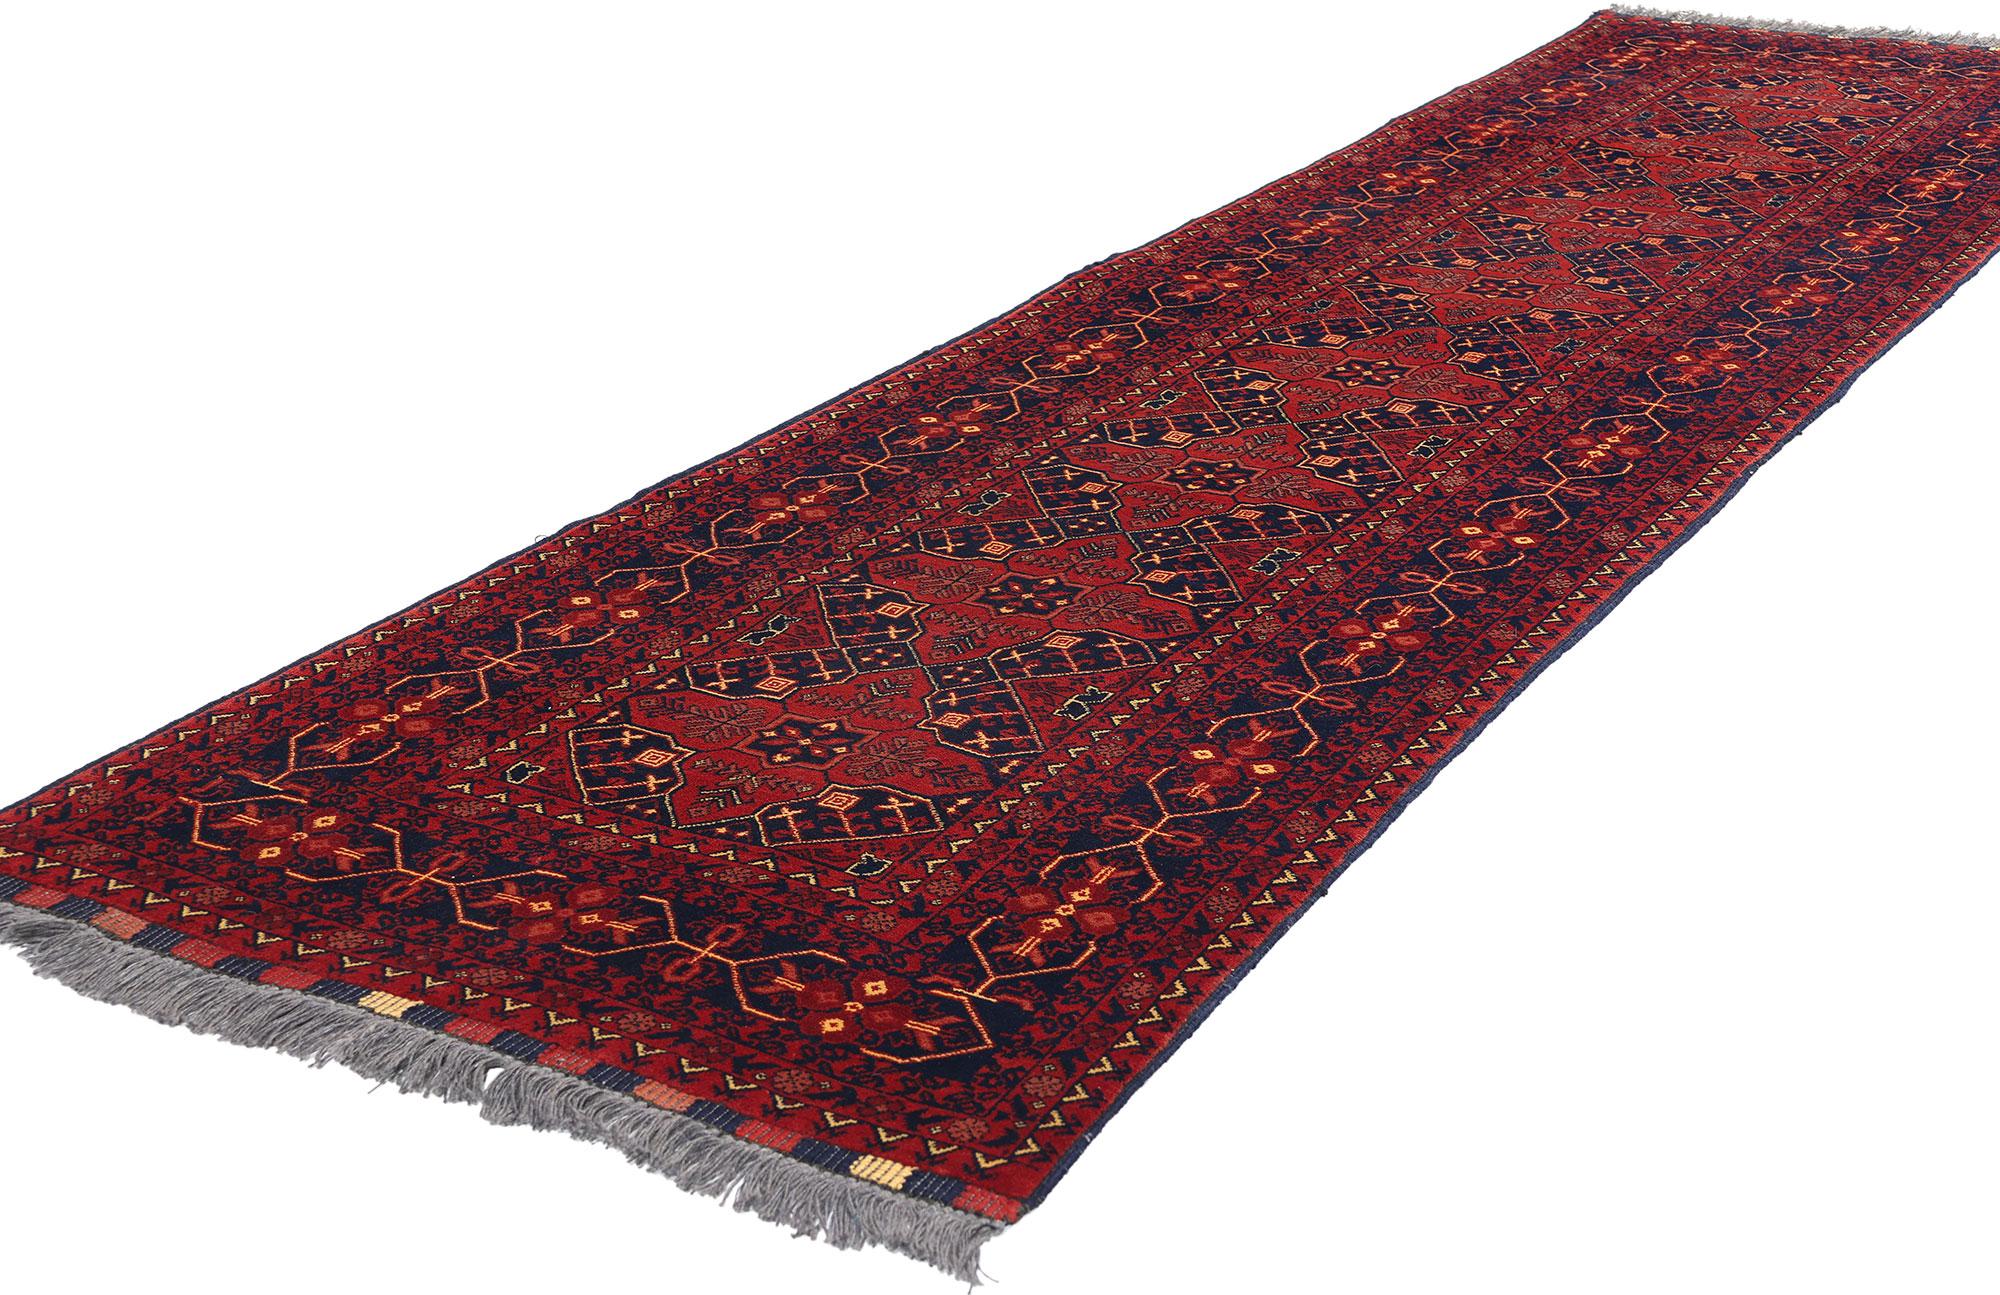 77009 Tapis vintage Afghan Baluch, 02'07 x 09'08. Les tapis afghans Baluchs sont des textiles tissés à la main provenant des tribus Baluchs d'Afghanistan. Ces tapis se caractérisent par des dessins complexes, des motifs géométriques et des couleurs